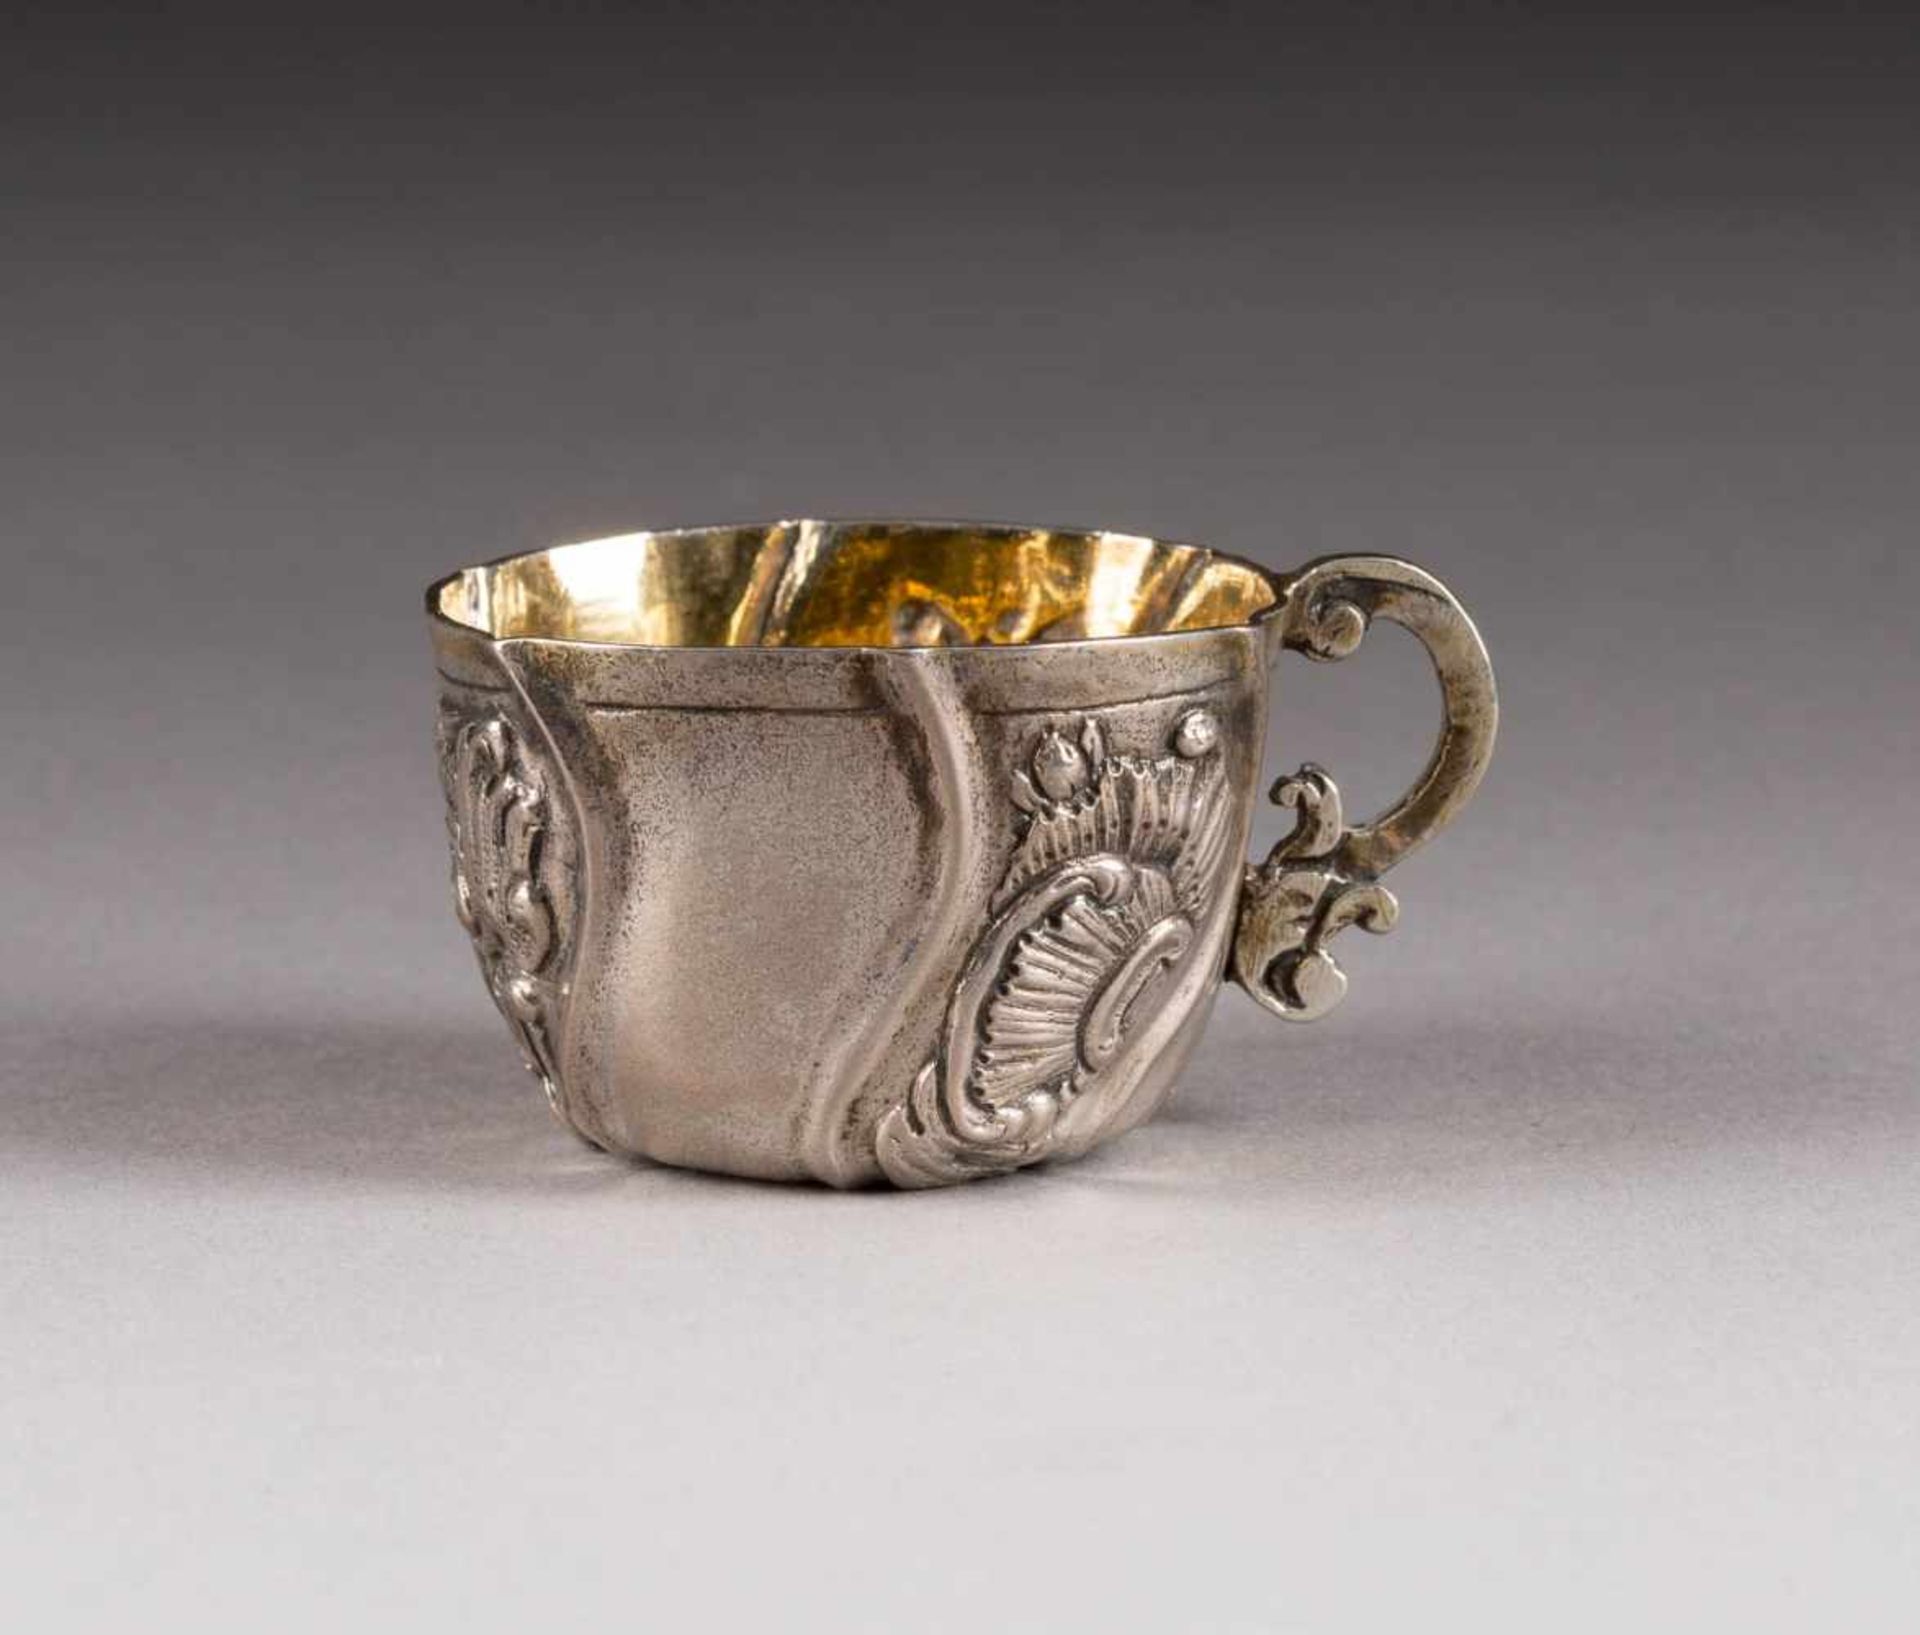 BAROCKES TSCHARKA Russland, um 1775 Silber, getrieben, ziseliert und partielle vergoldet. H. 3 cm,